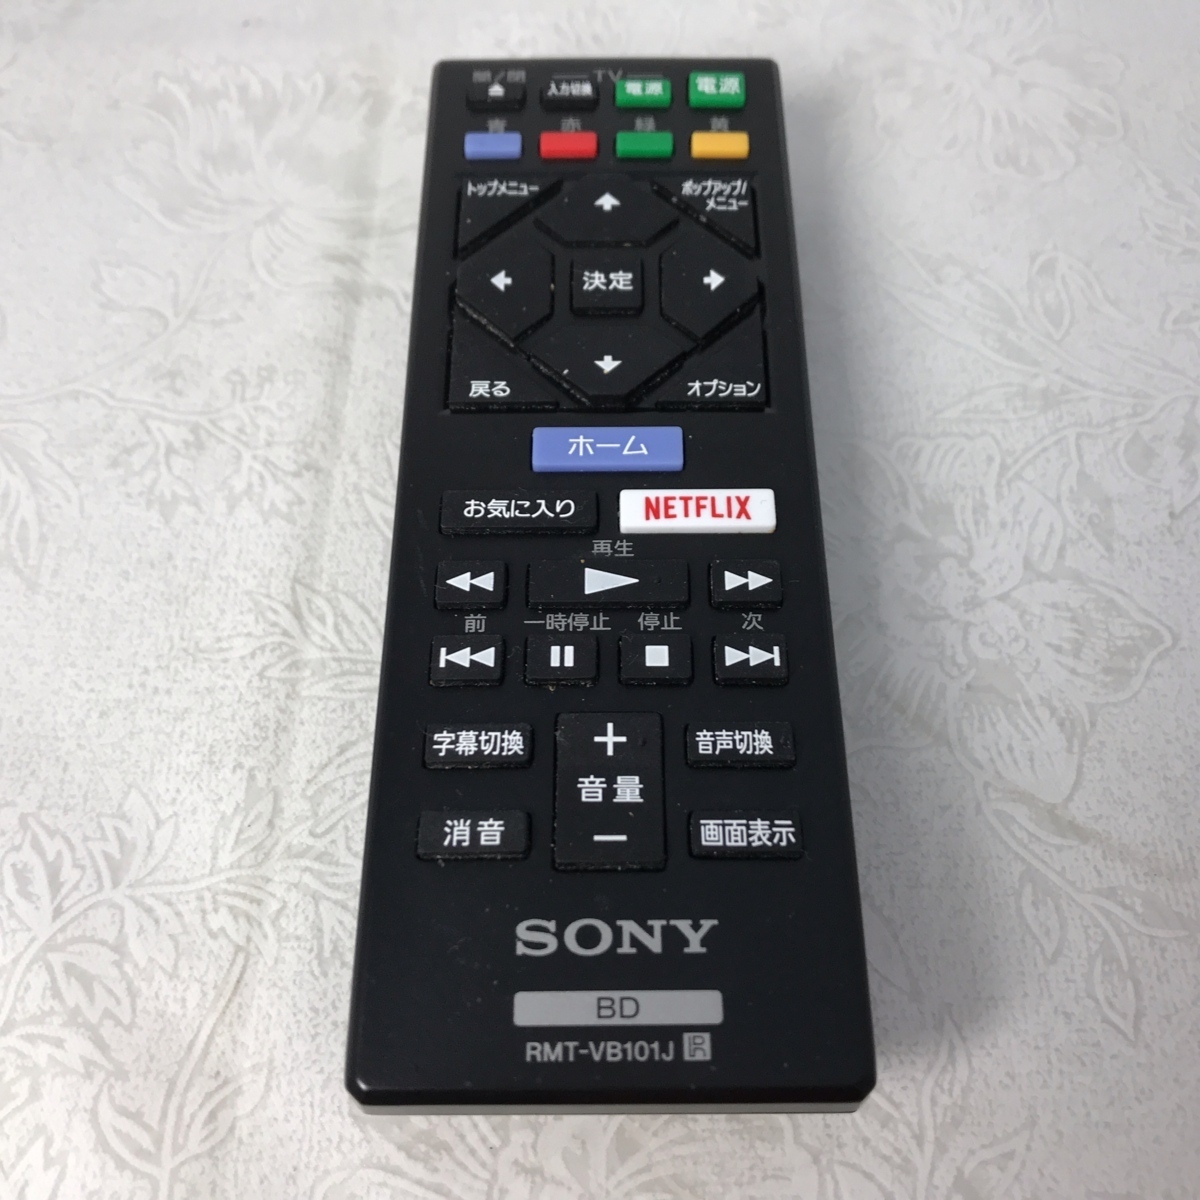 !!SONY/ Sony Blue-ray плеер для RMT-VB101J дистанционный пульт б/у товар }!